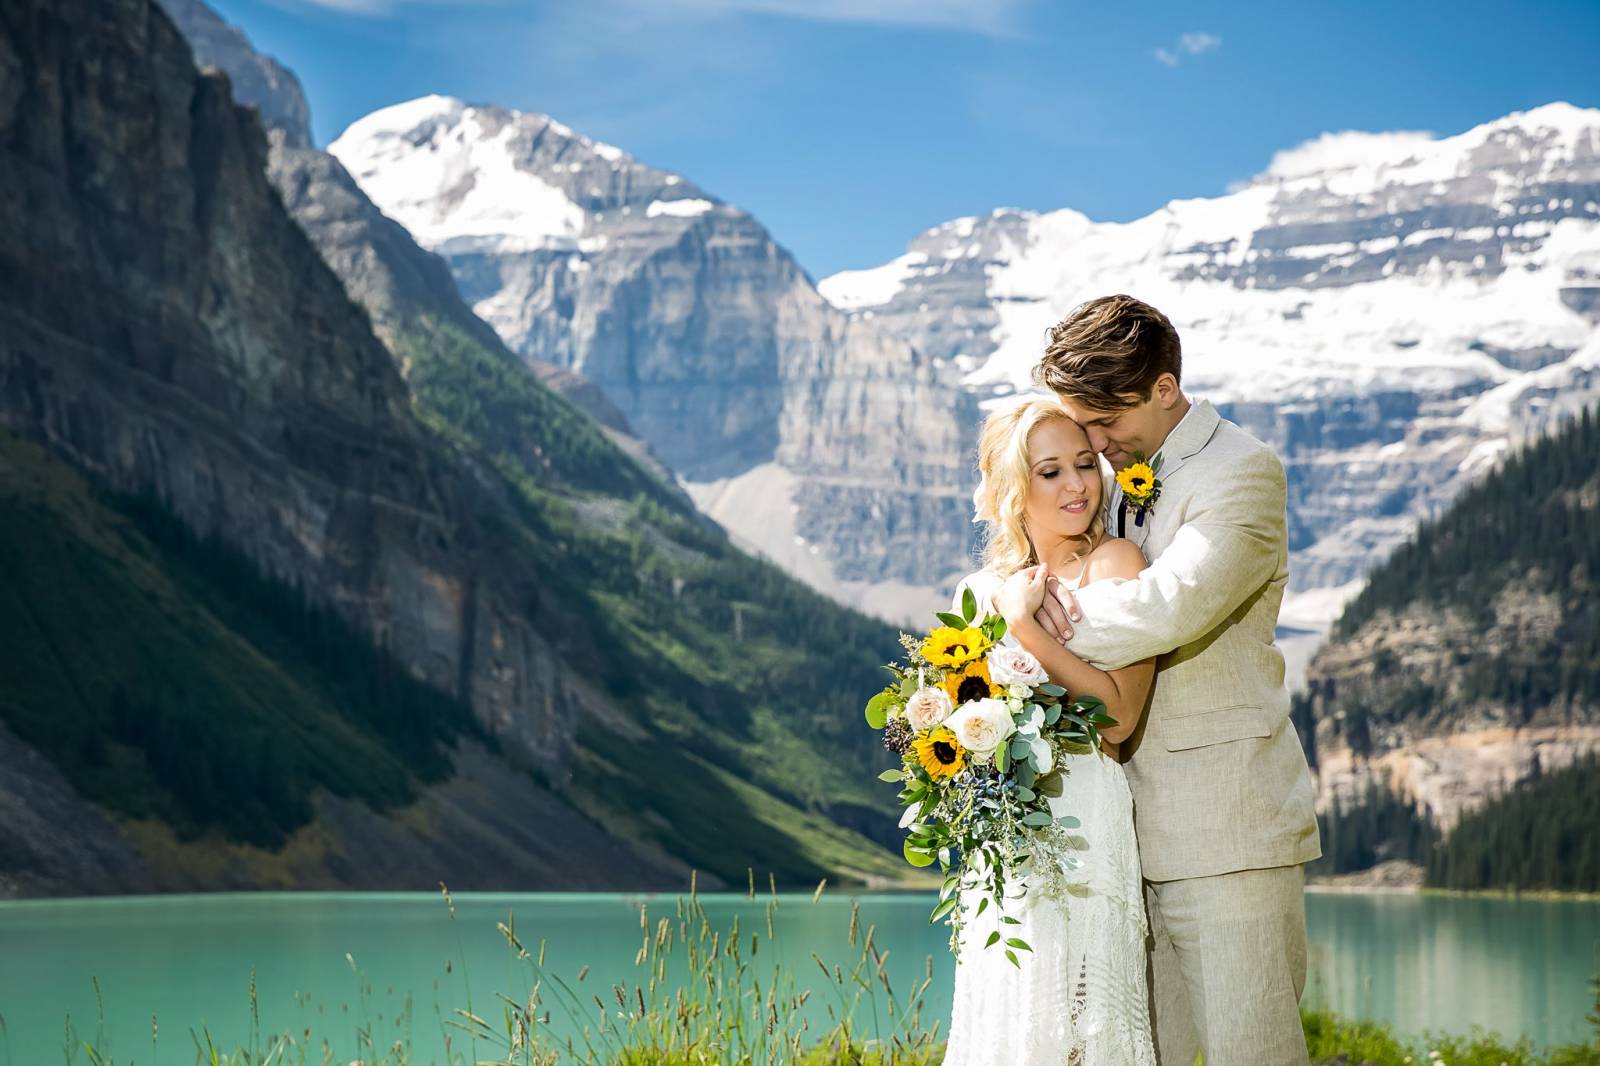 Lake Louise Wedding, Fairmont Chateau Lake Louise, outdoor ceremony, mountain wedding, Lake Louise w